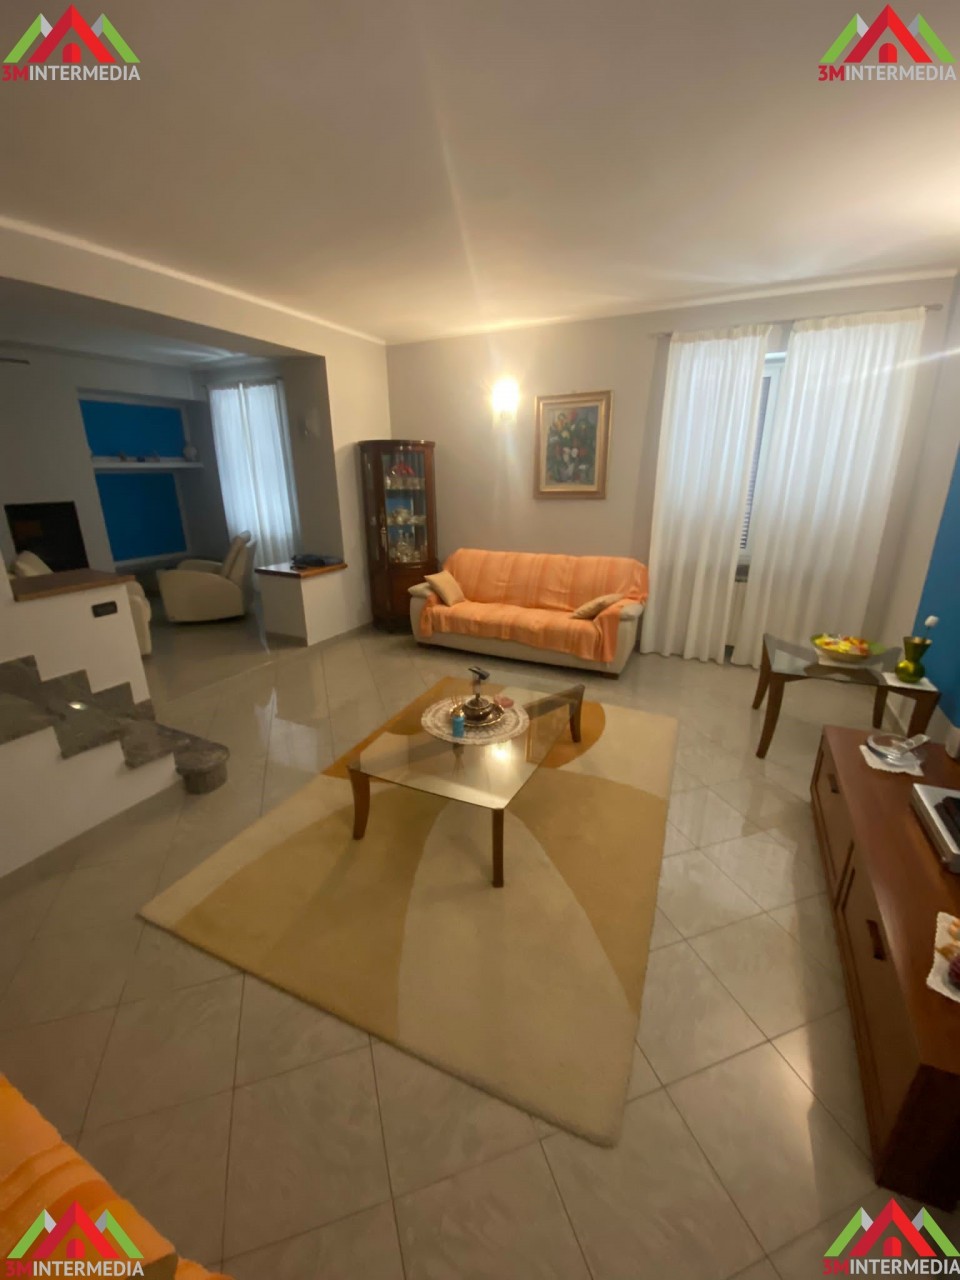 Appartamento in vendita a Valenza, 6 locali, prezzo € 300.000 | CambioCasa.it